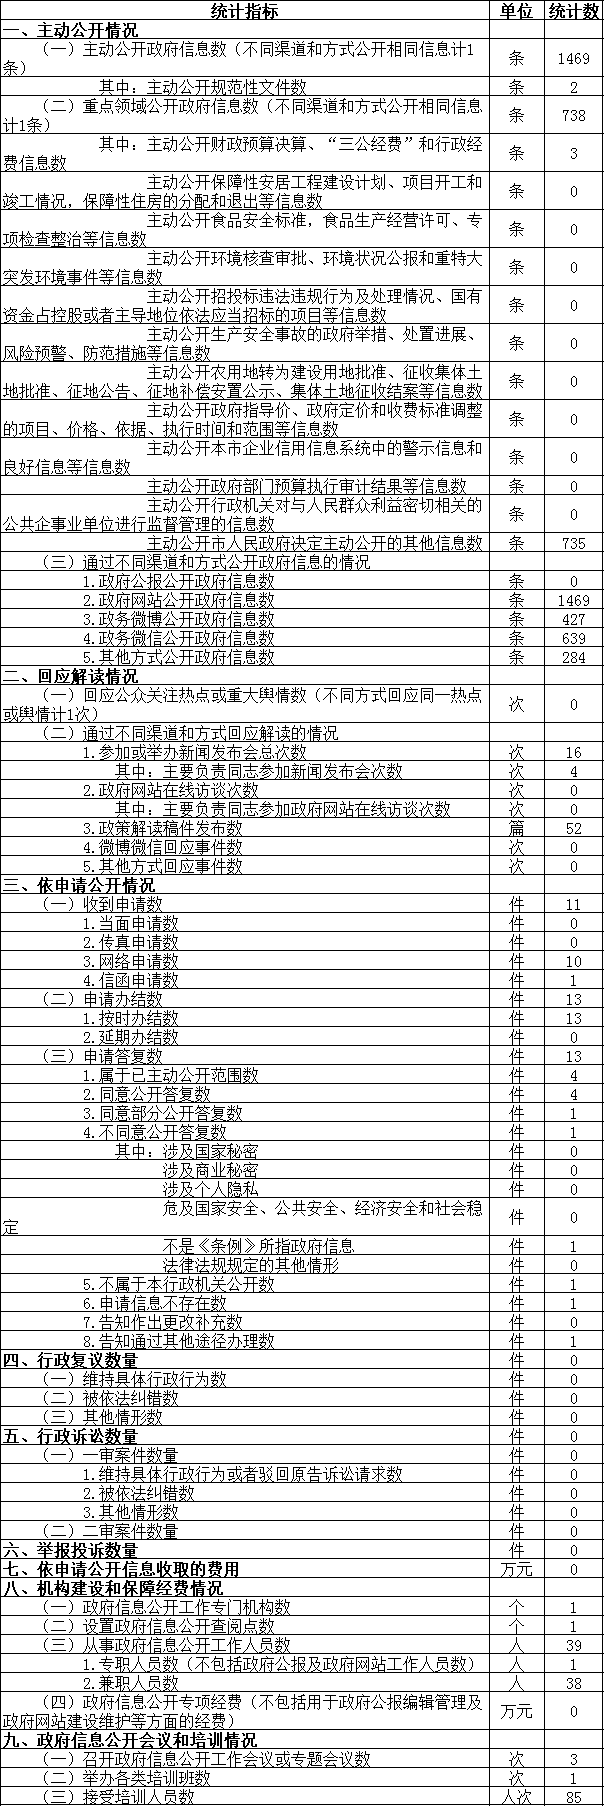 北京市体育局政府信息公开情况统计表